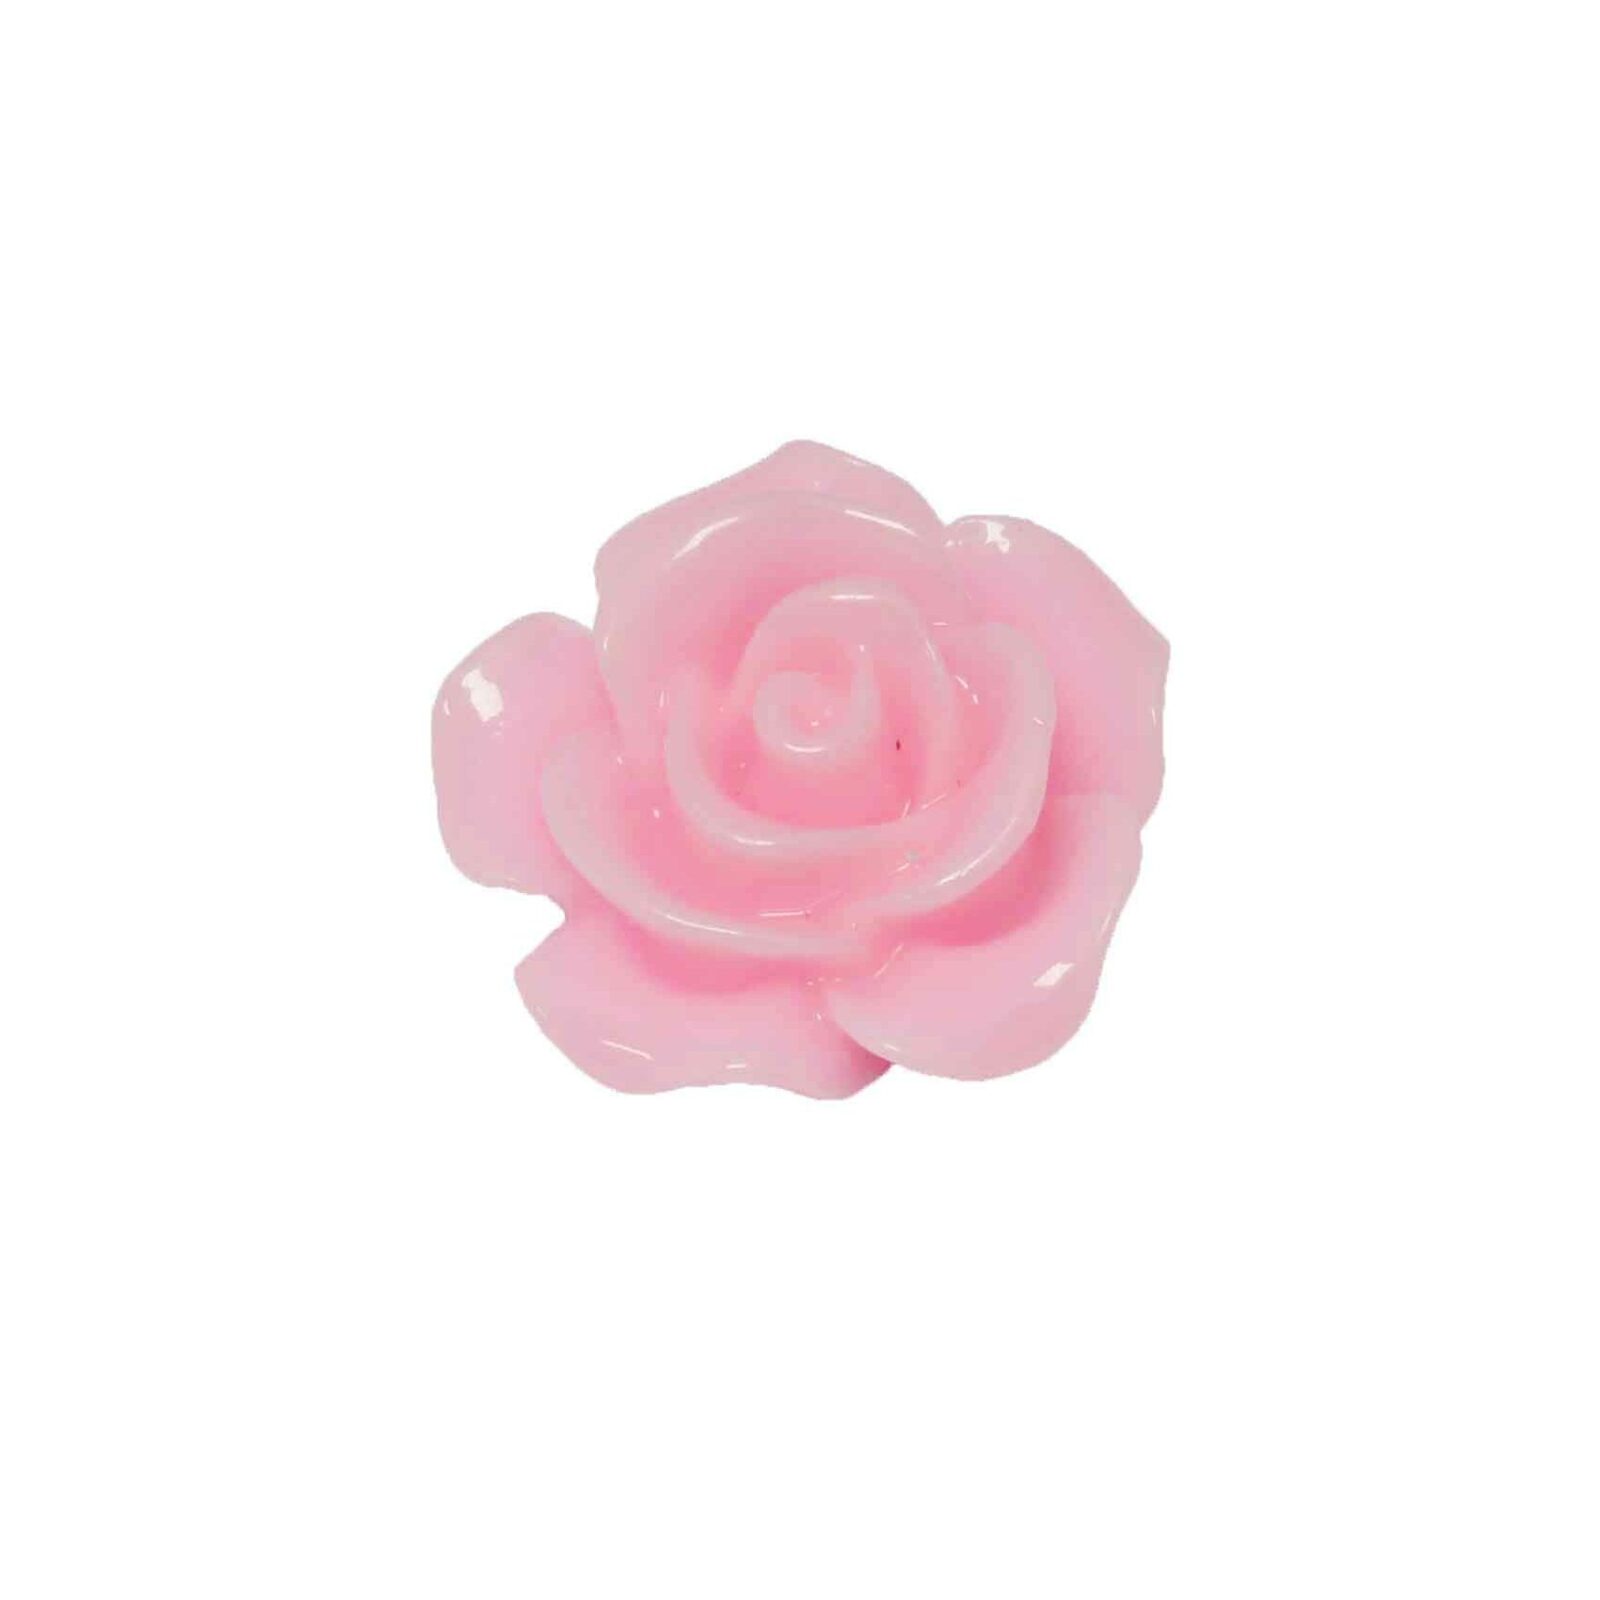 Resin roosje roze